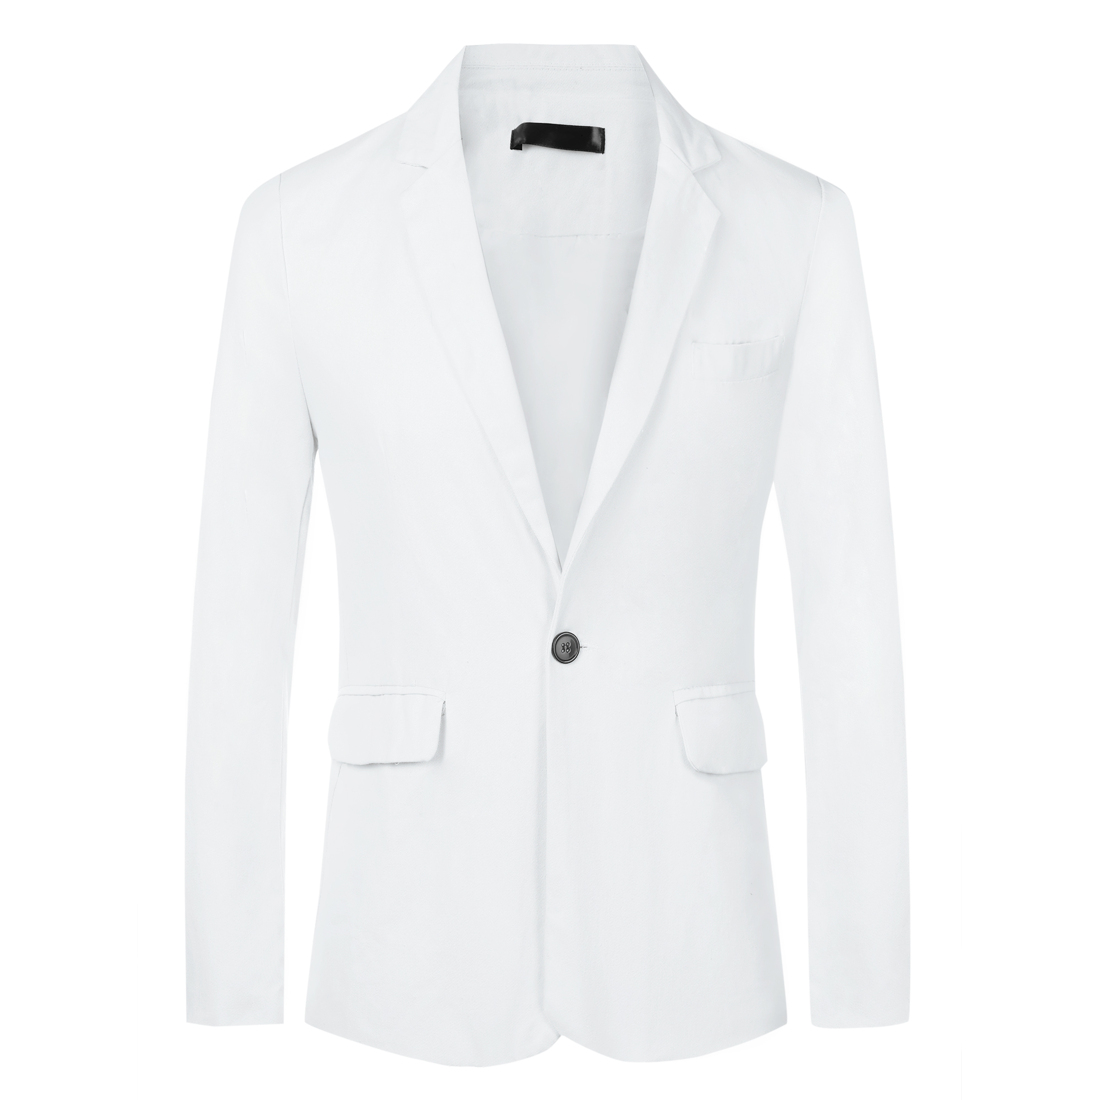 Unique Bargains Solid Color Business Blazer for Men's One Button Notched Lapel Sports Coat Suit Jackets